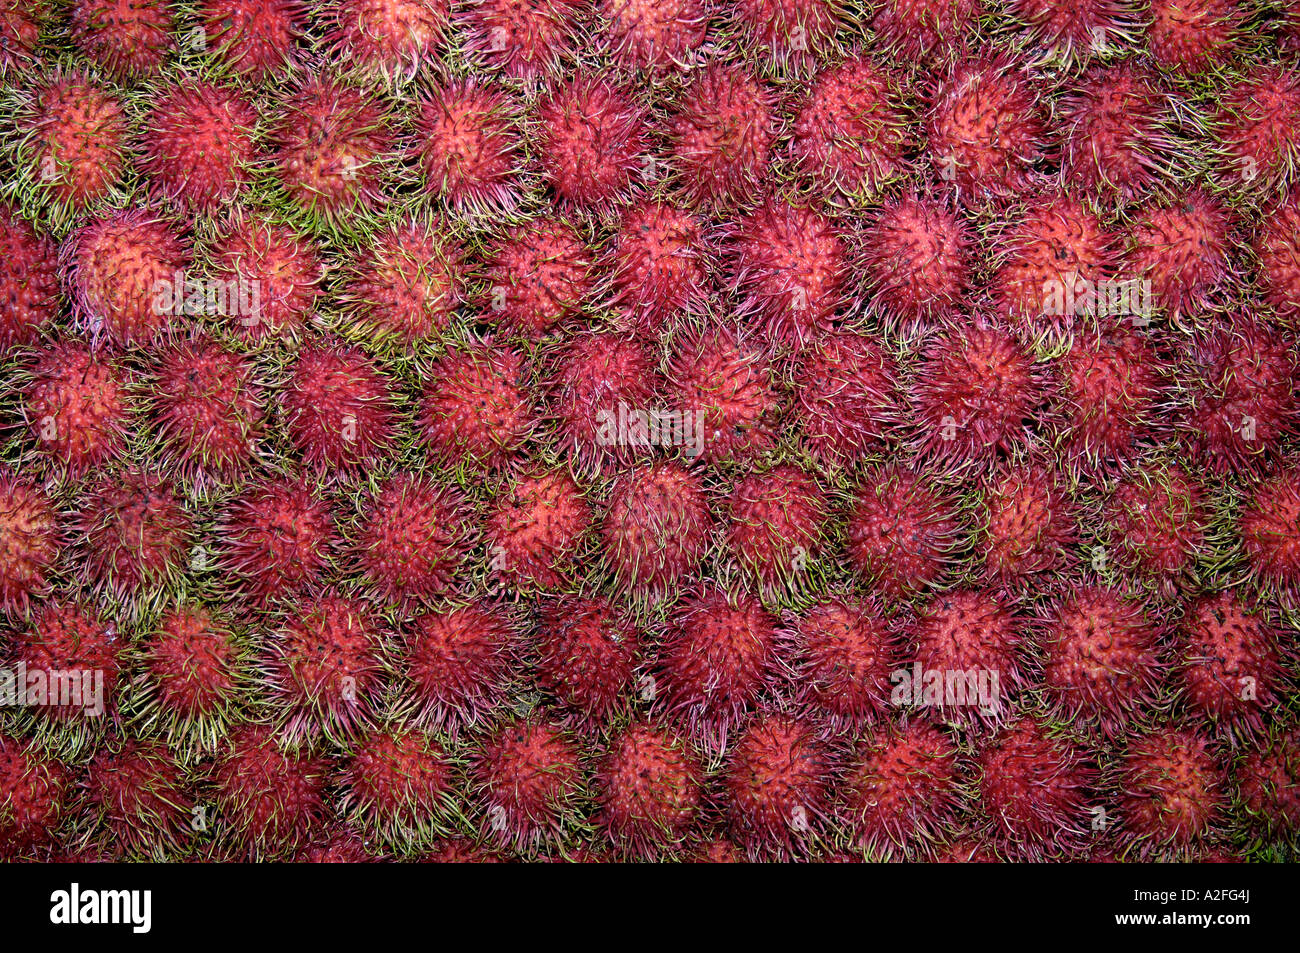 Rambutan fruits, Nephelium lappaceum Stock Photo